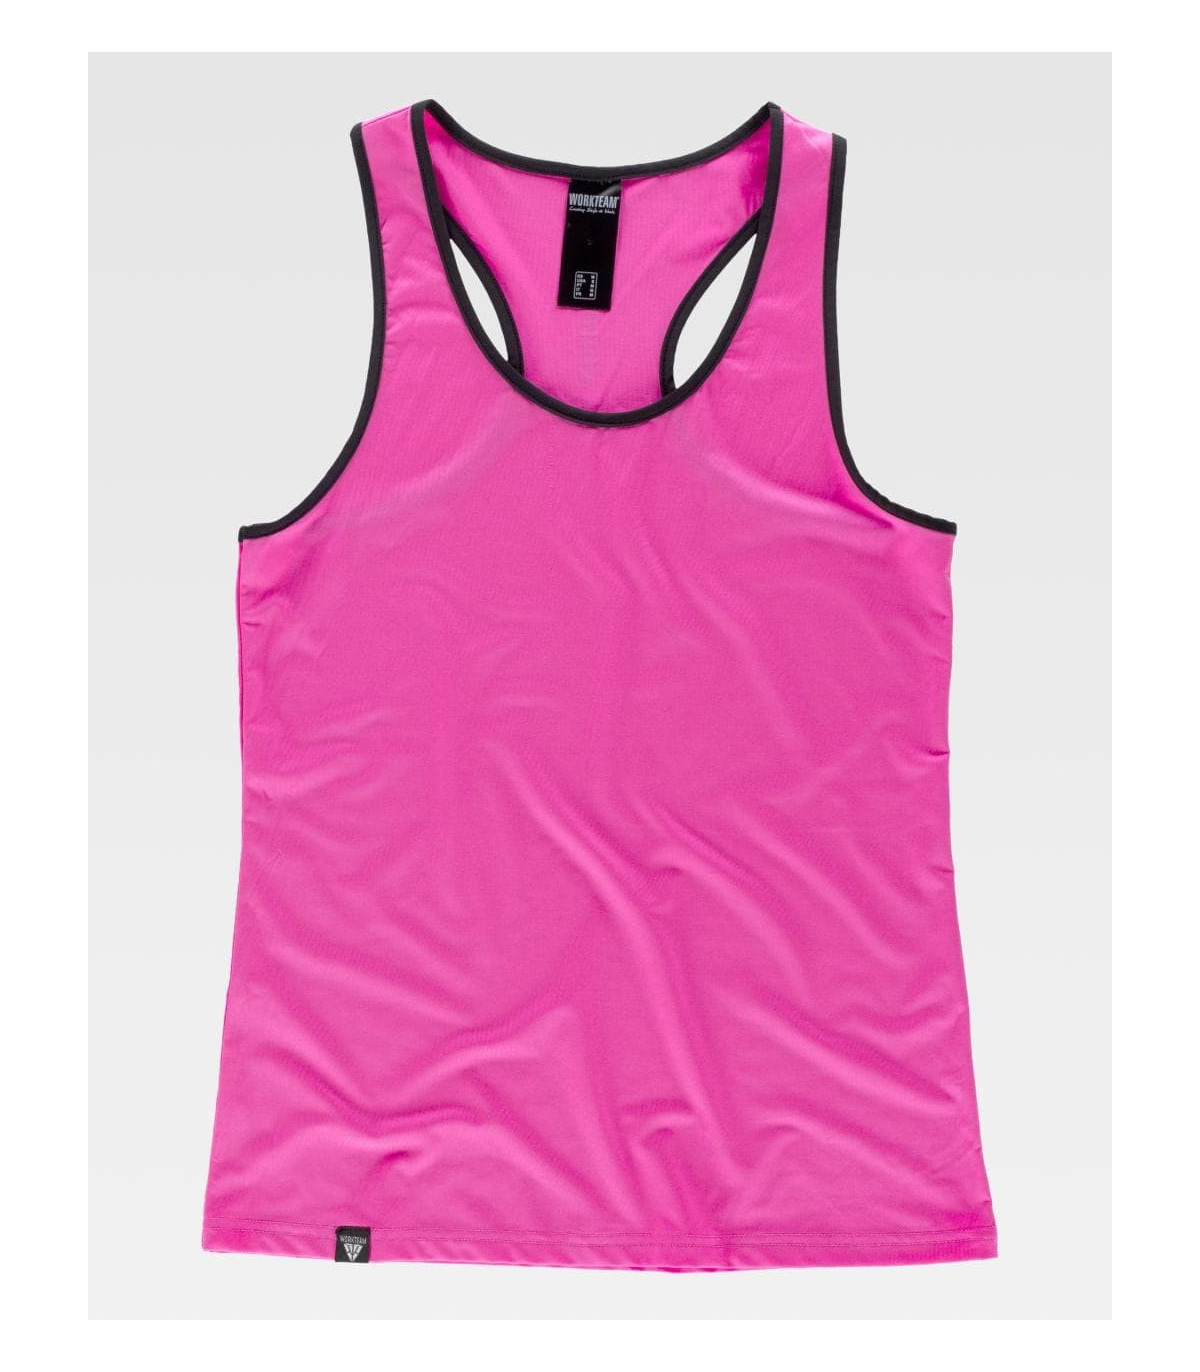 Camiseta Sport elástica confortable WORKTEAM S7520 para mujer, comprar online